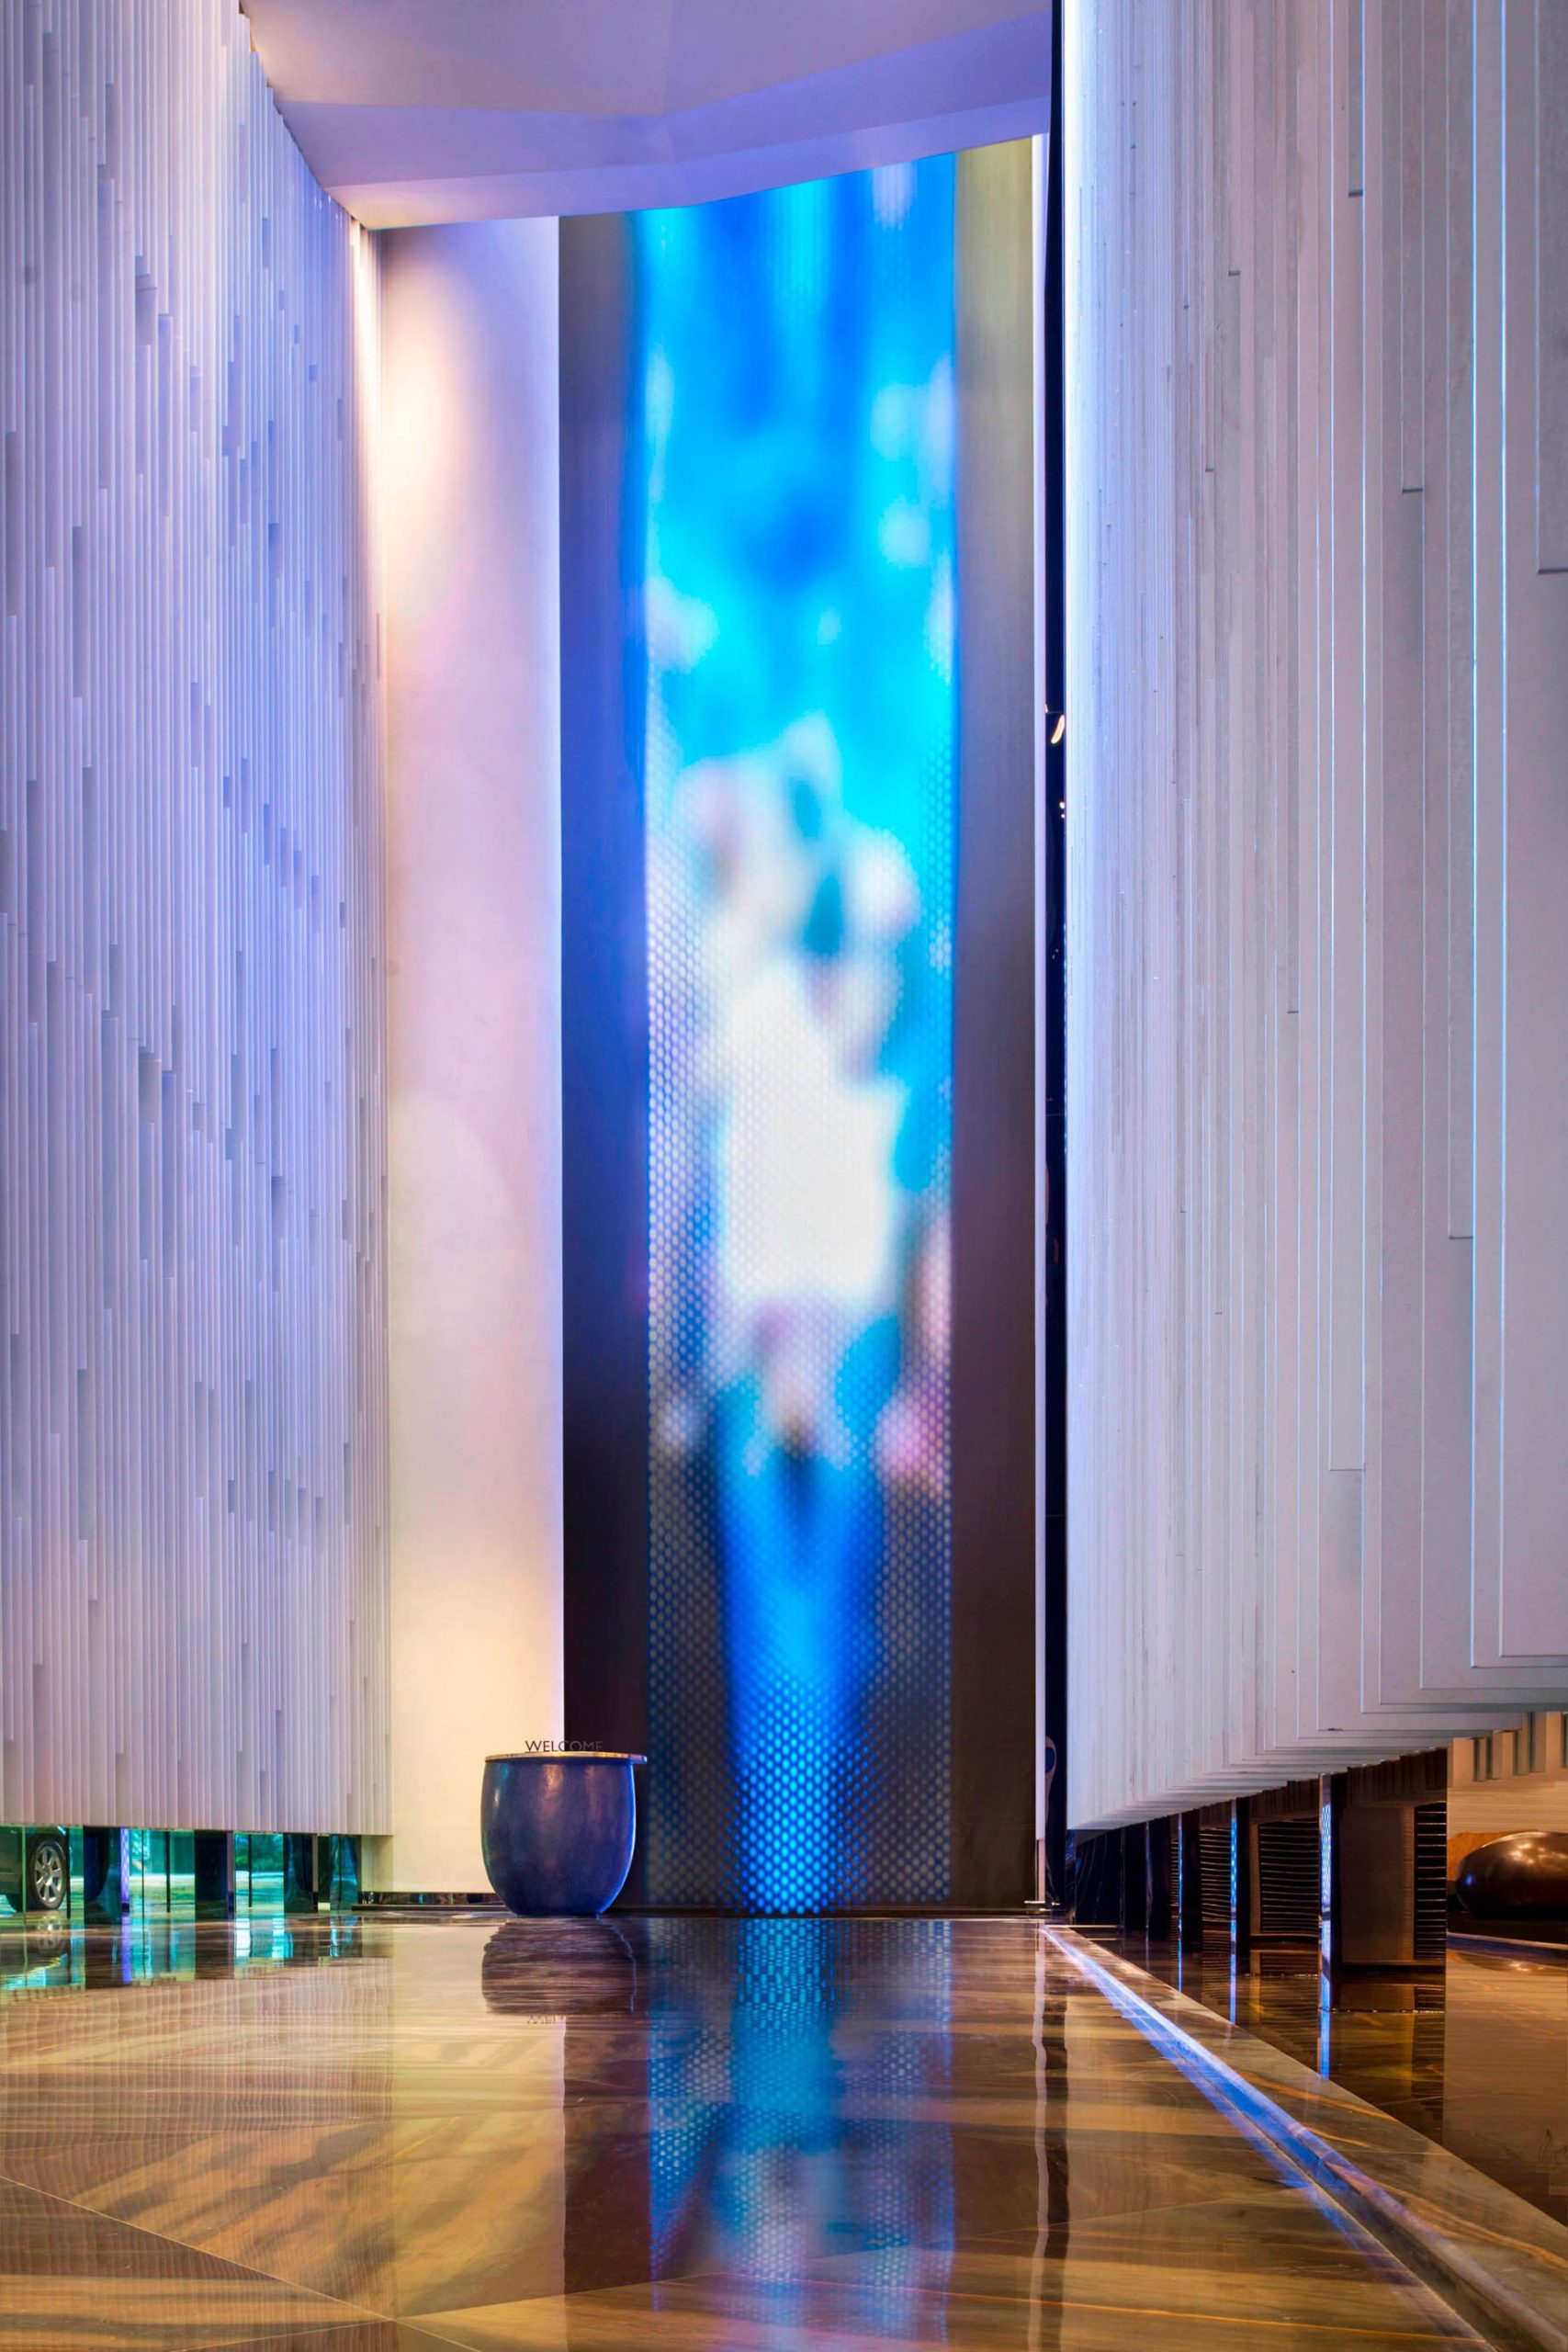 W Guangzhou Hotel – Tianhe District, Guangzhou, China – Hotel Luminous WaterWall